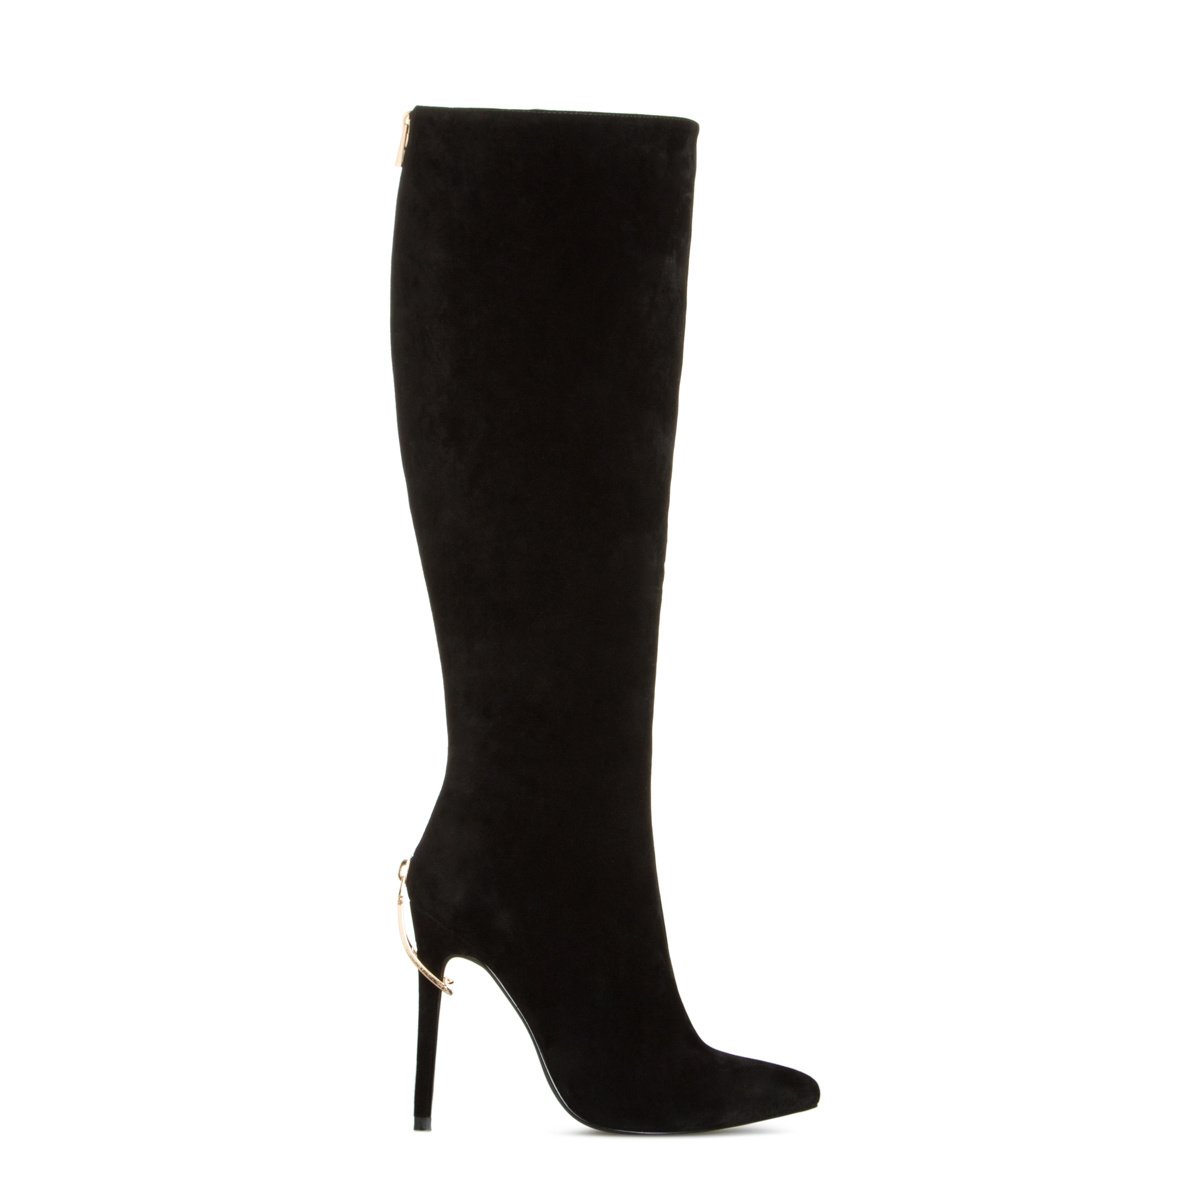 Ariz Cheap Knee High Boots, Women's Black High Heel Boots ...